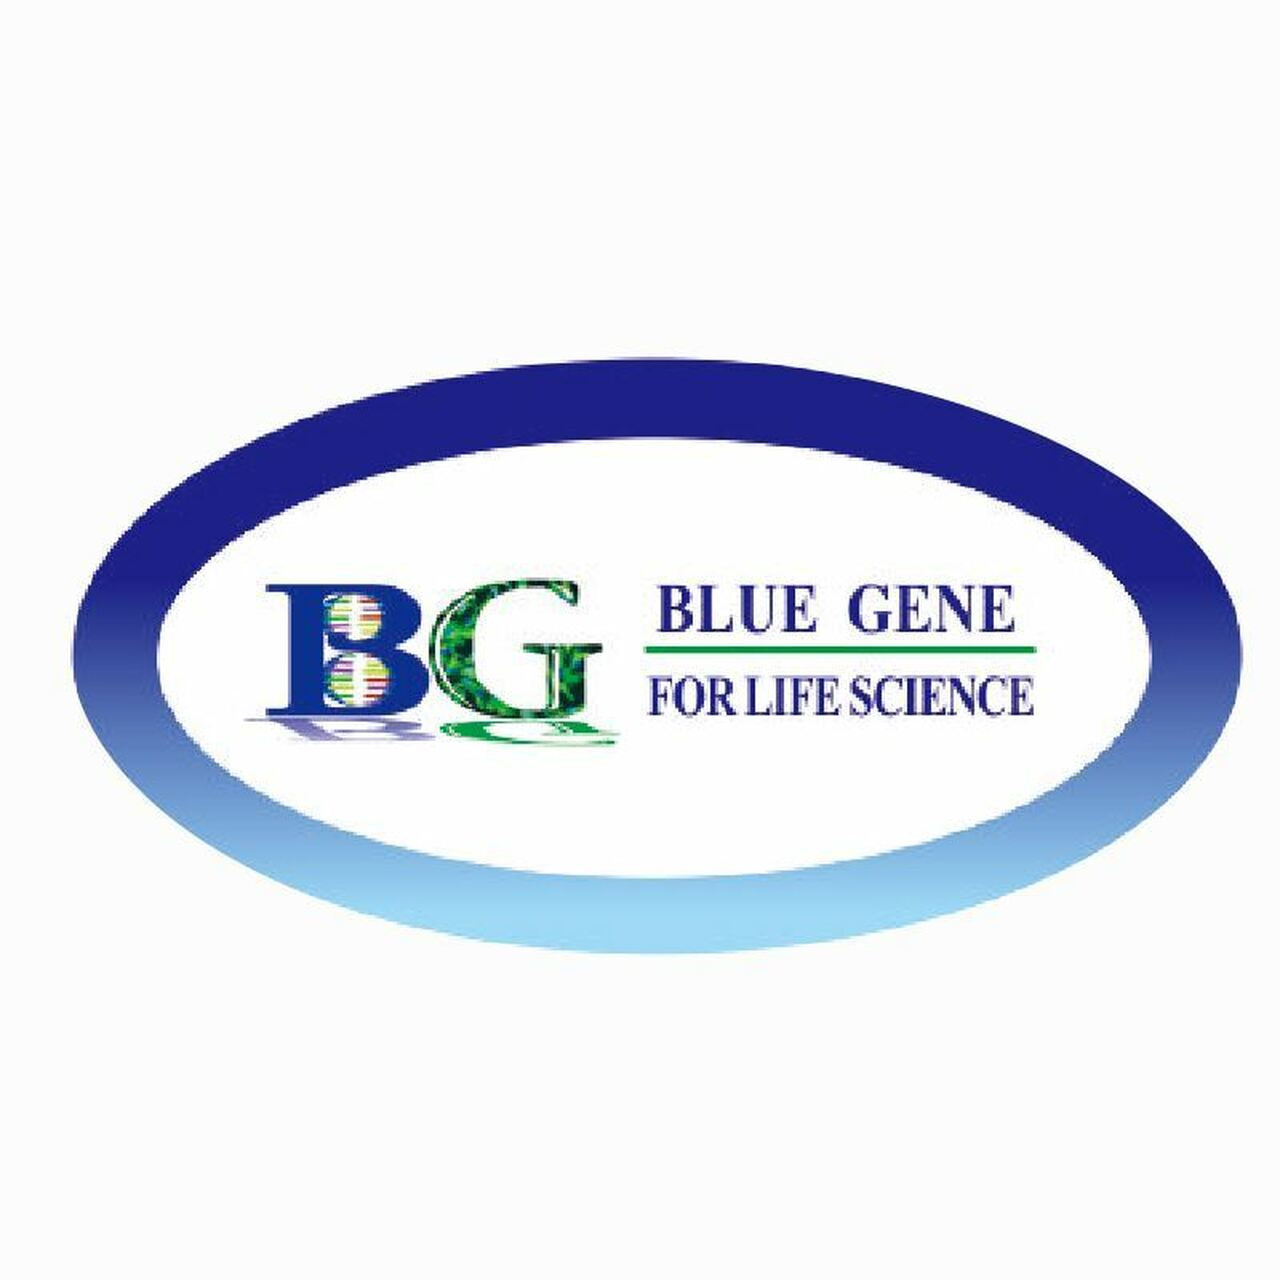 bluegene-human retinol binding protein 1elisa kit